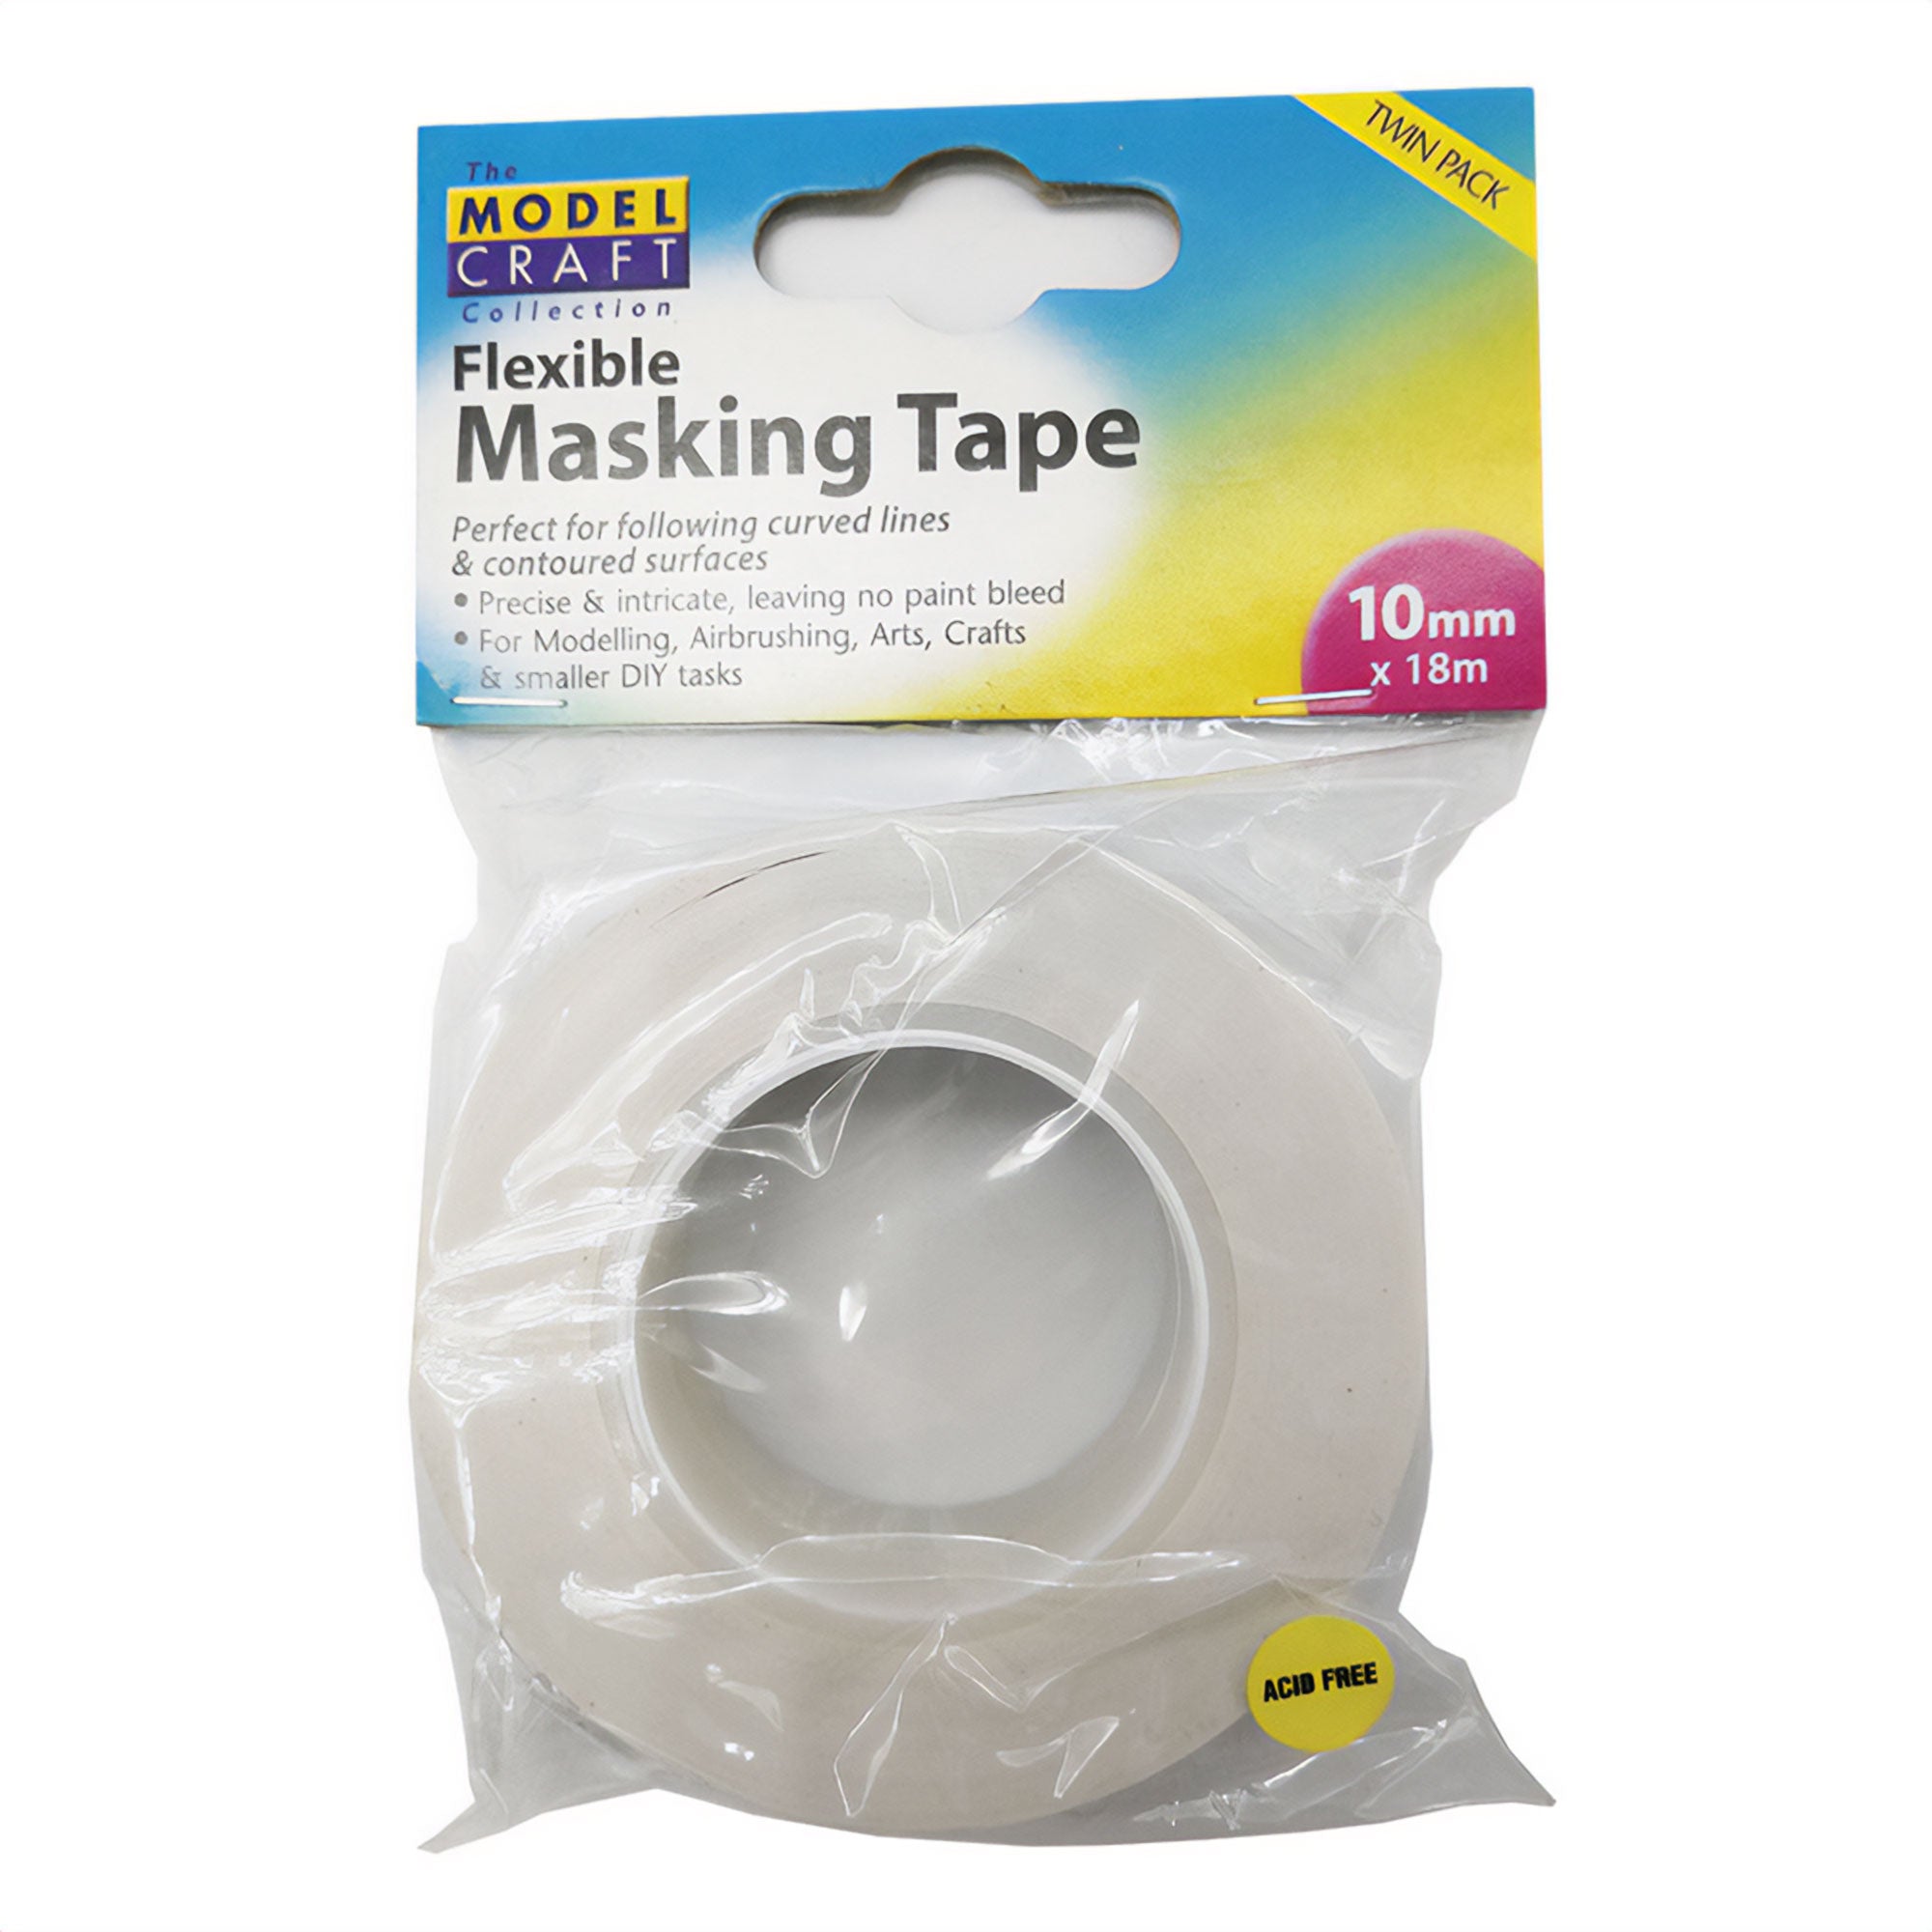 Flexible Masking Tape